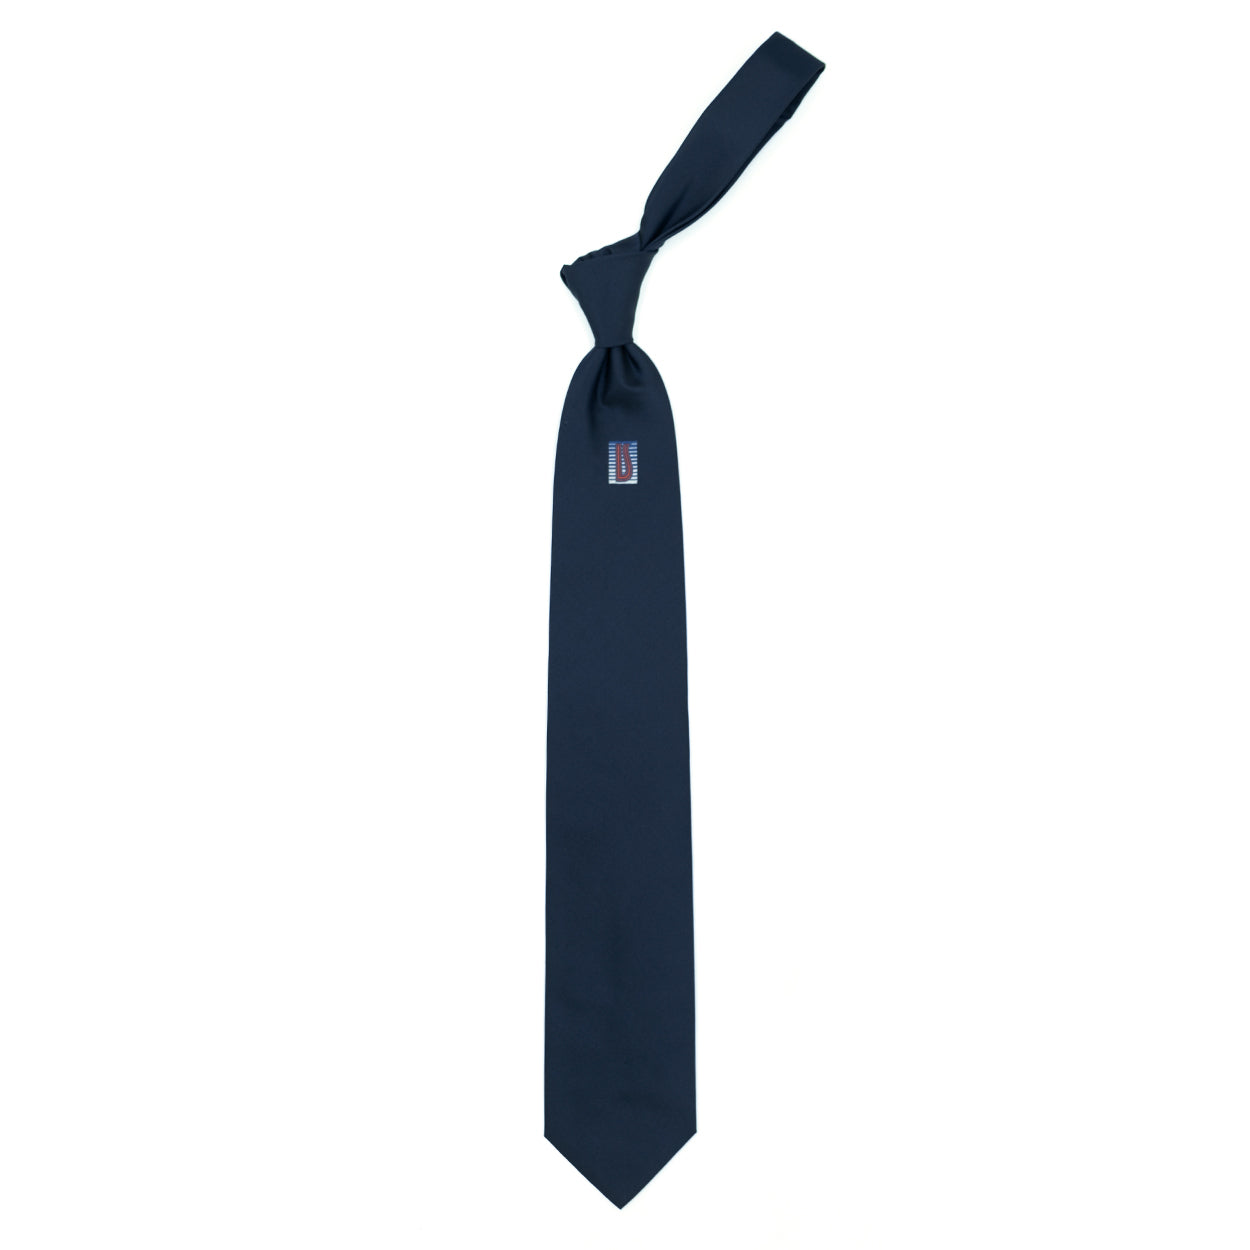 Cravatta blu con logo Ulturale rosso al sottonodo